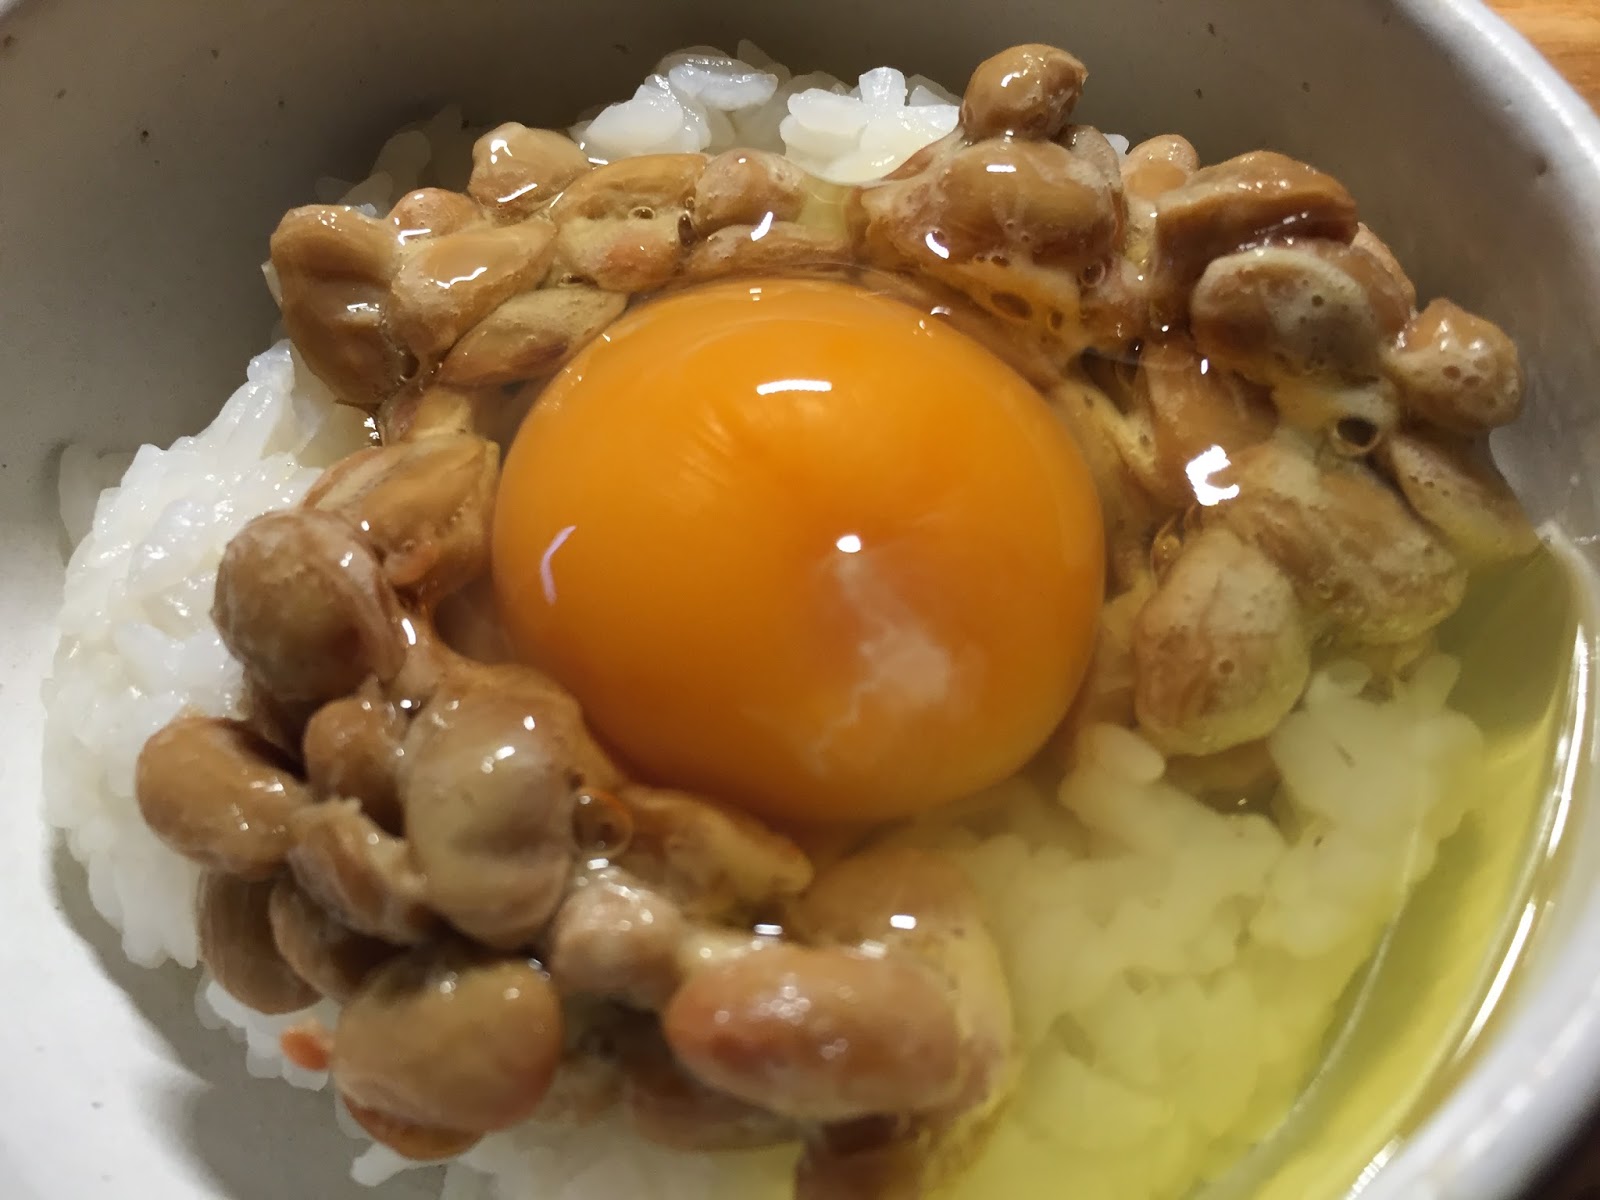 14zawa Blog 食事 納豆と卵の組み合わせは 筋肉だけでなく脳にも良よかった